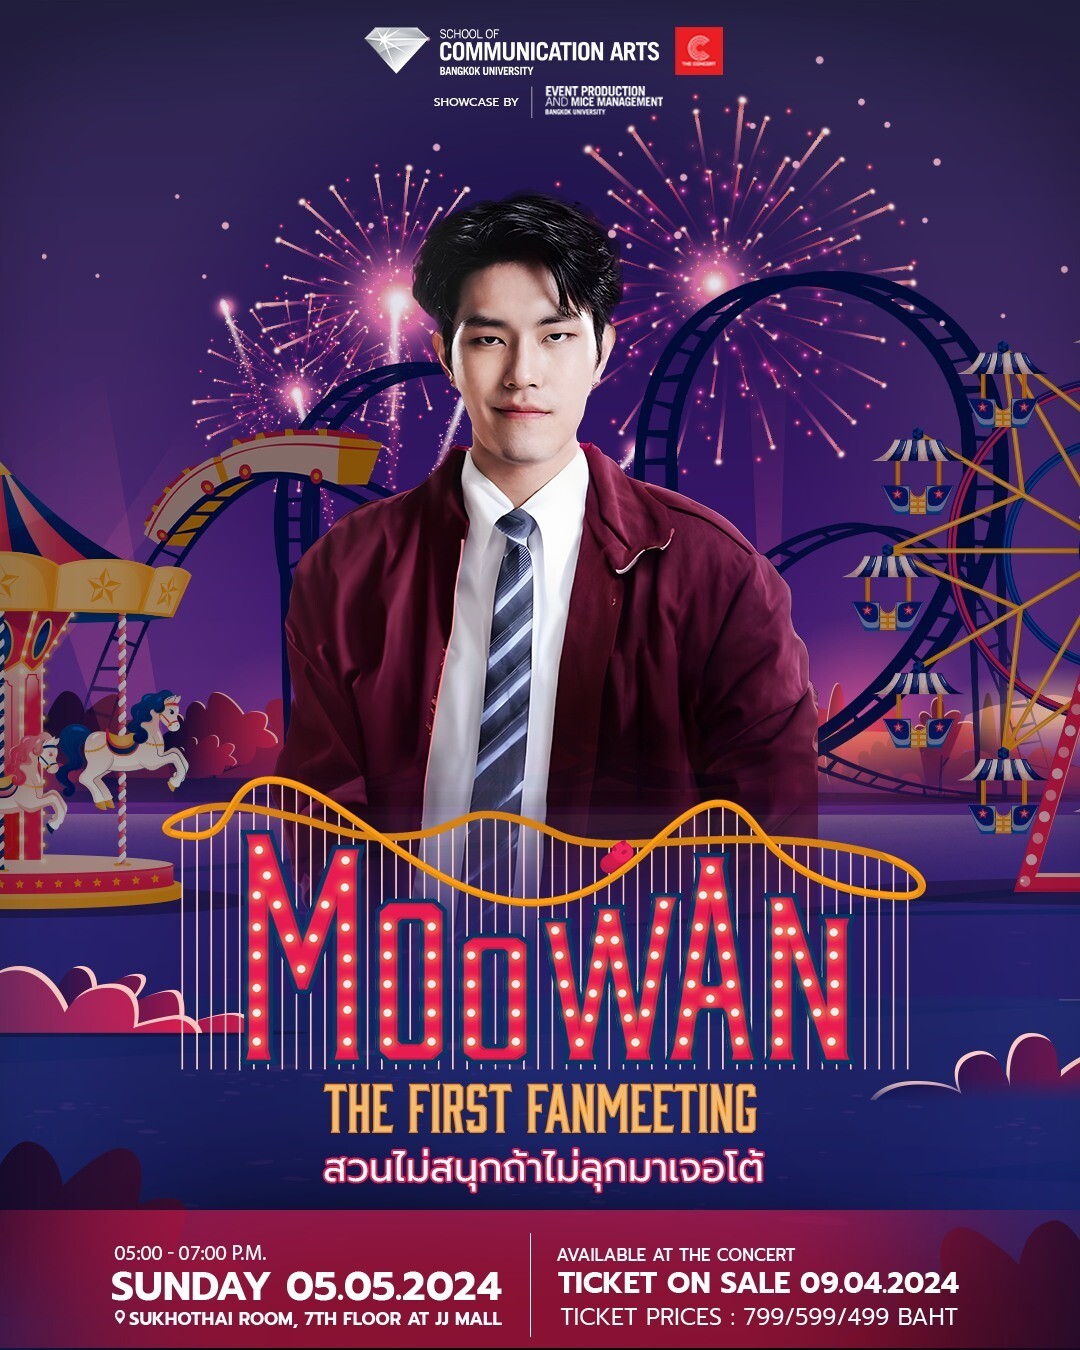 เชิญพบกับ Fanmeeting ครั้งแรก! ของ "หมูหวาน-เมธาสิทธิ์" ใน "MOOWAN THE FIRST FAN MEETING Showcase by EVENT BU"